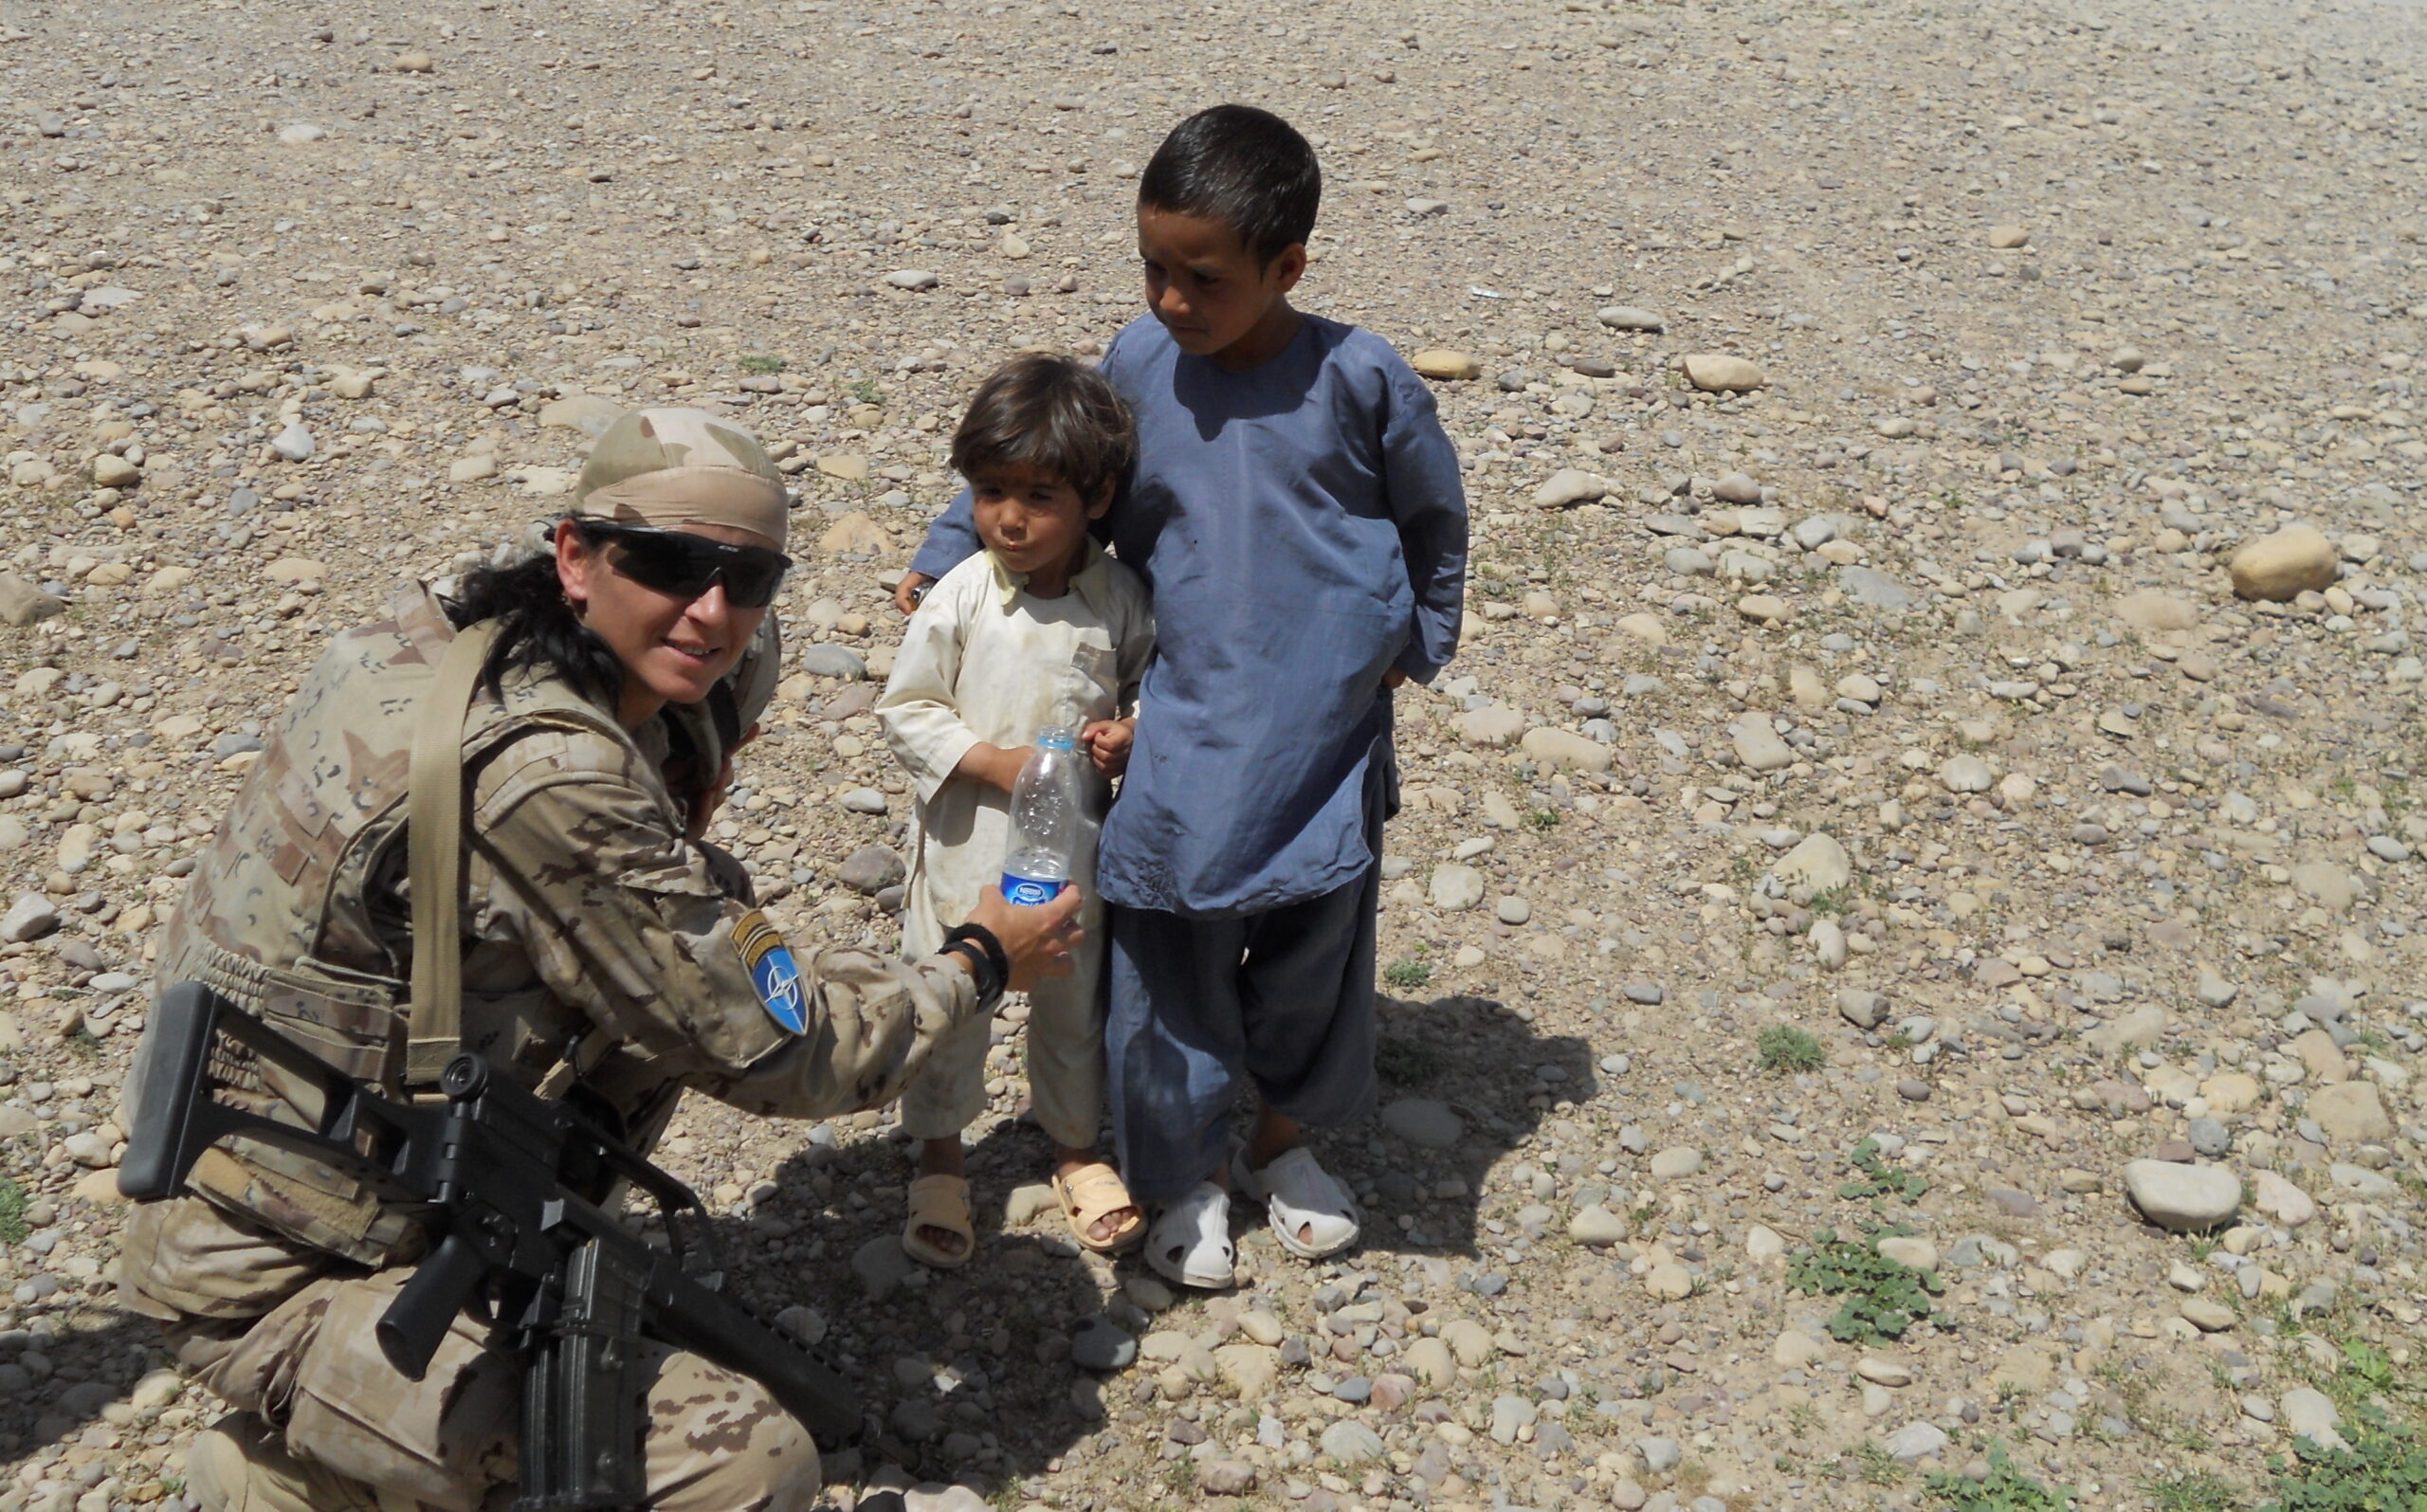 La Cabo 1ª Adelina Torres aparece a la izquierda de la foto con uniforme de campaña, agachada ofreciendo una botella de agua a dos niños mientras patrulla el aeropuerto de Qala-e-Naw en Afganistán.